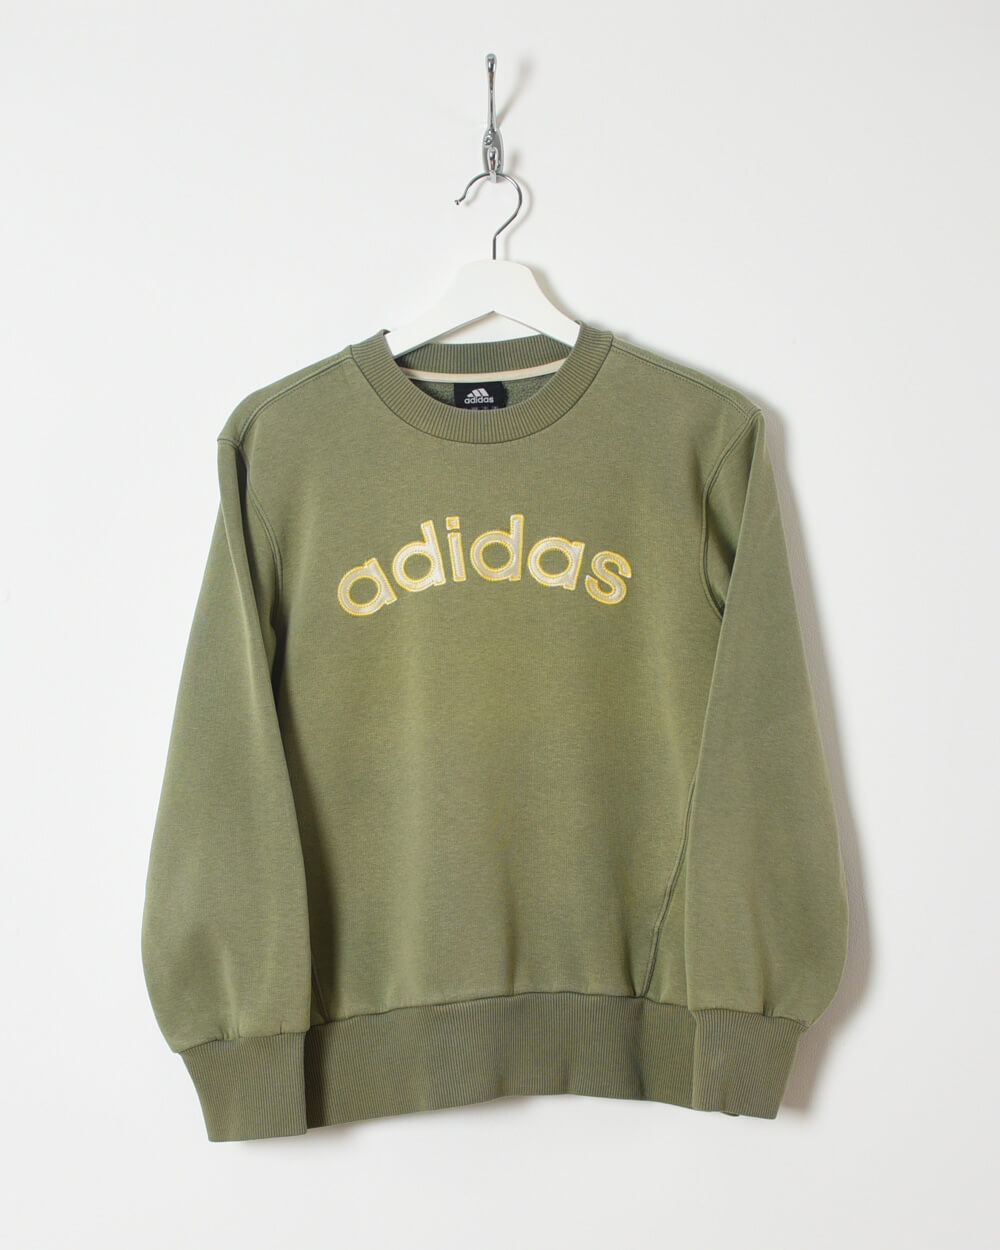 Adidas Sweatshirt - X-Small - Domno Vintage